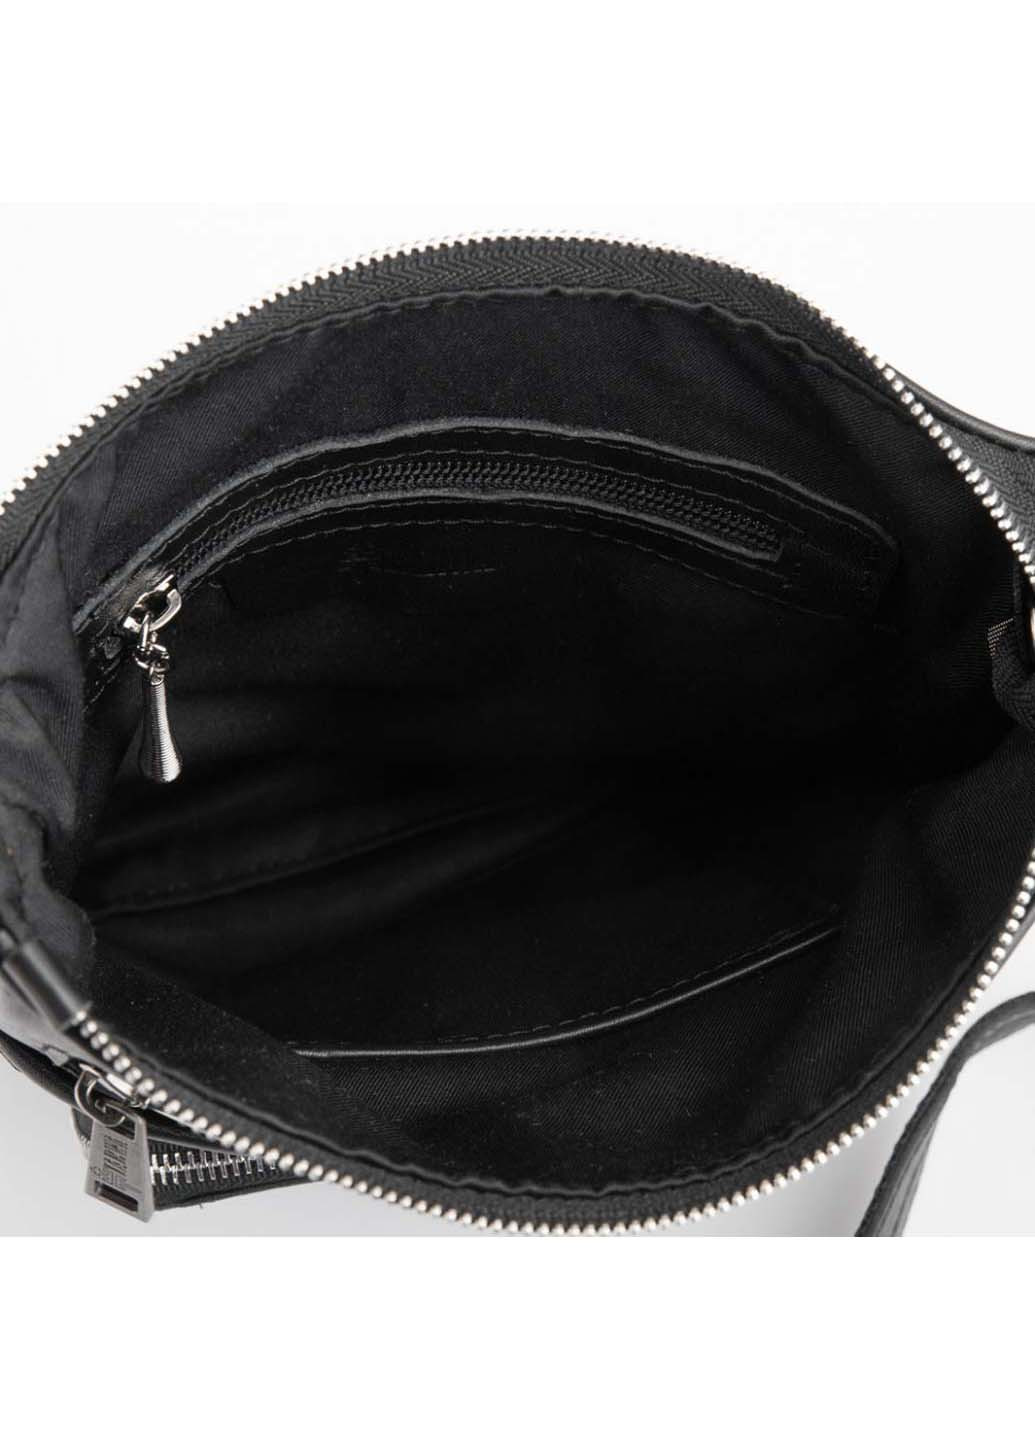 Мужская кожаная сумка мессенджер GA-1303-4lx с карманом TARWA (257996575)